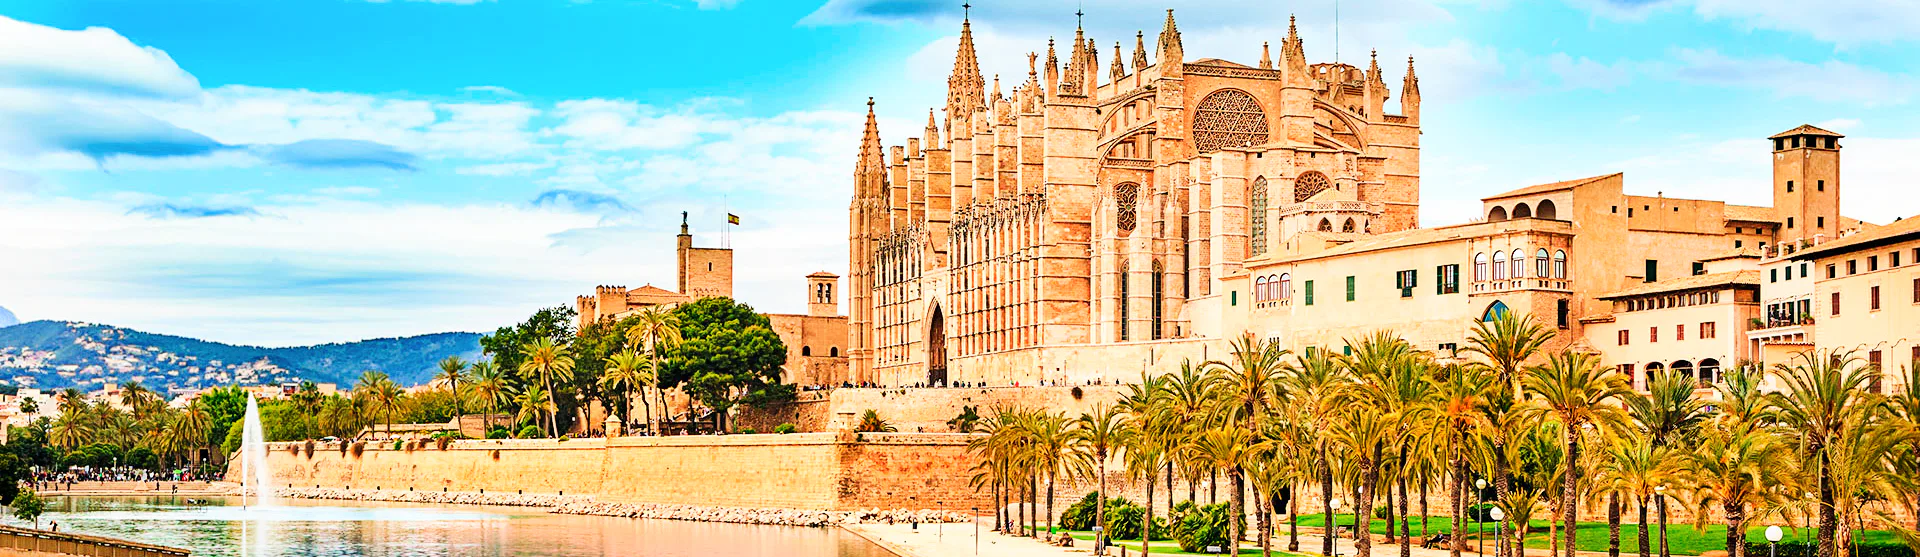 Middellandse Zee Cruise - Palma de Mallorca - Cathedral of Palma de Mallorca